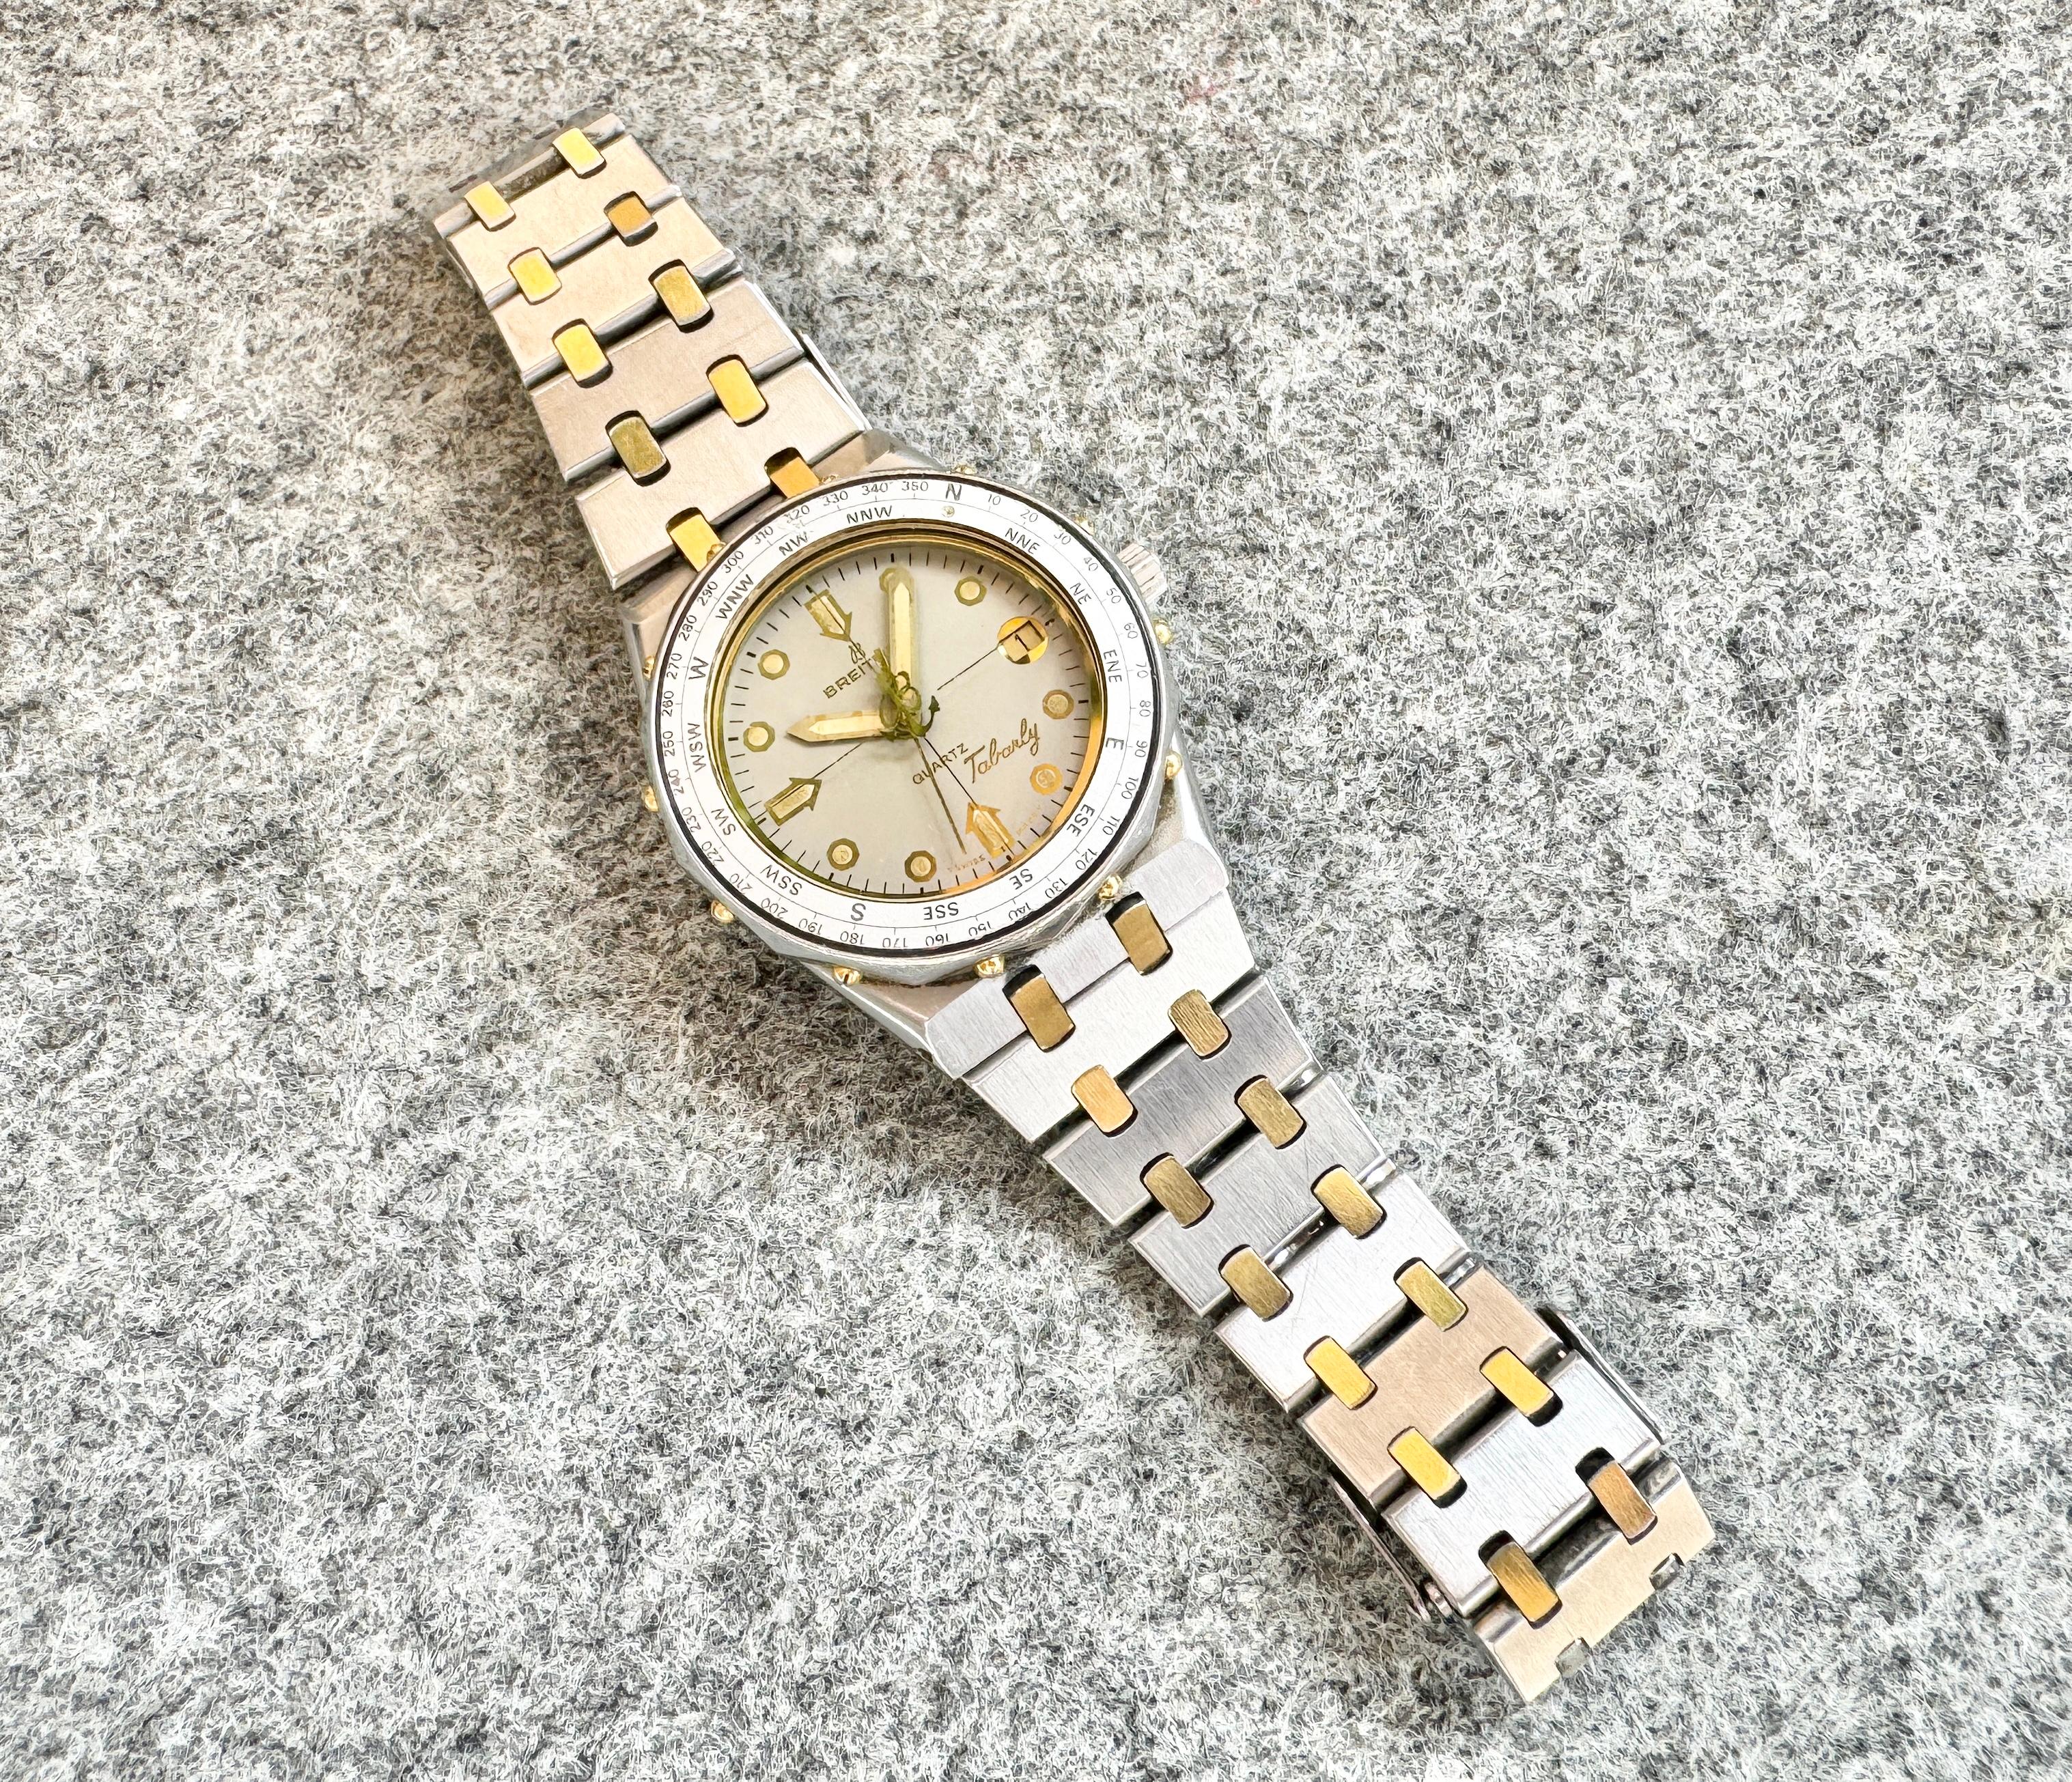 Marke: Breitling

Modell: Tabarly

Referenznummer: 80770N

Land der Herstellung: Schweiz

Uhrwerk: Quarz

MATERIAL des Gehäuses: Rostfreier Stahl/ Gold

Abmessungen: Gehäusebreite: 35 mm. (ohne Krone)

Band Typ : Edelstahl/vergoldet

Band Zustand: